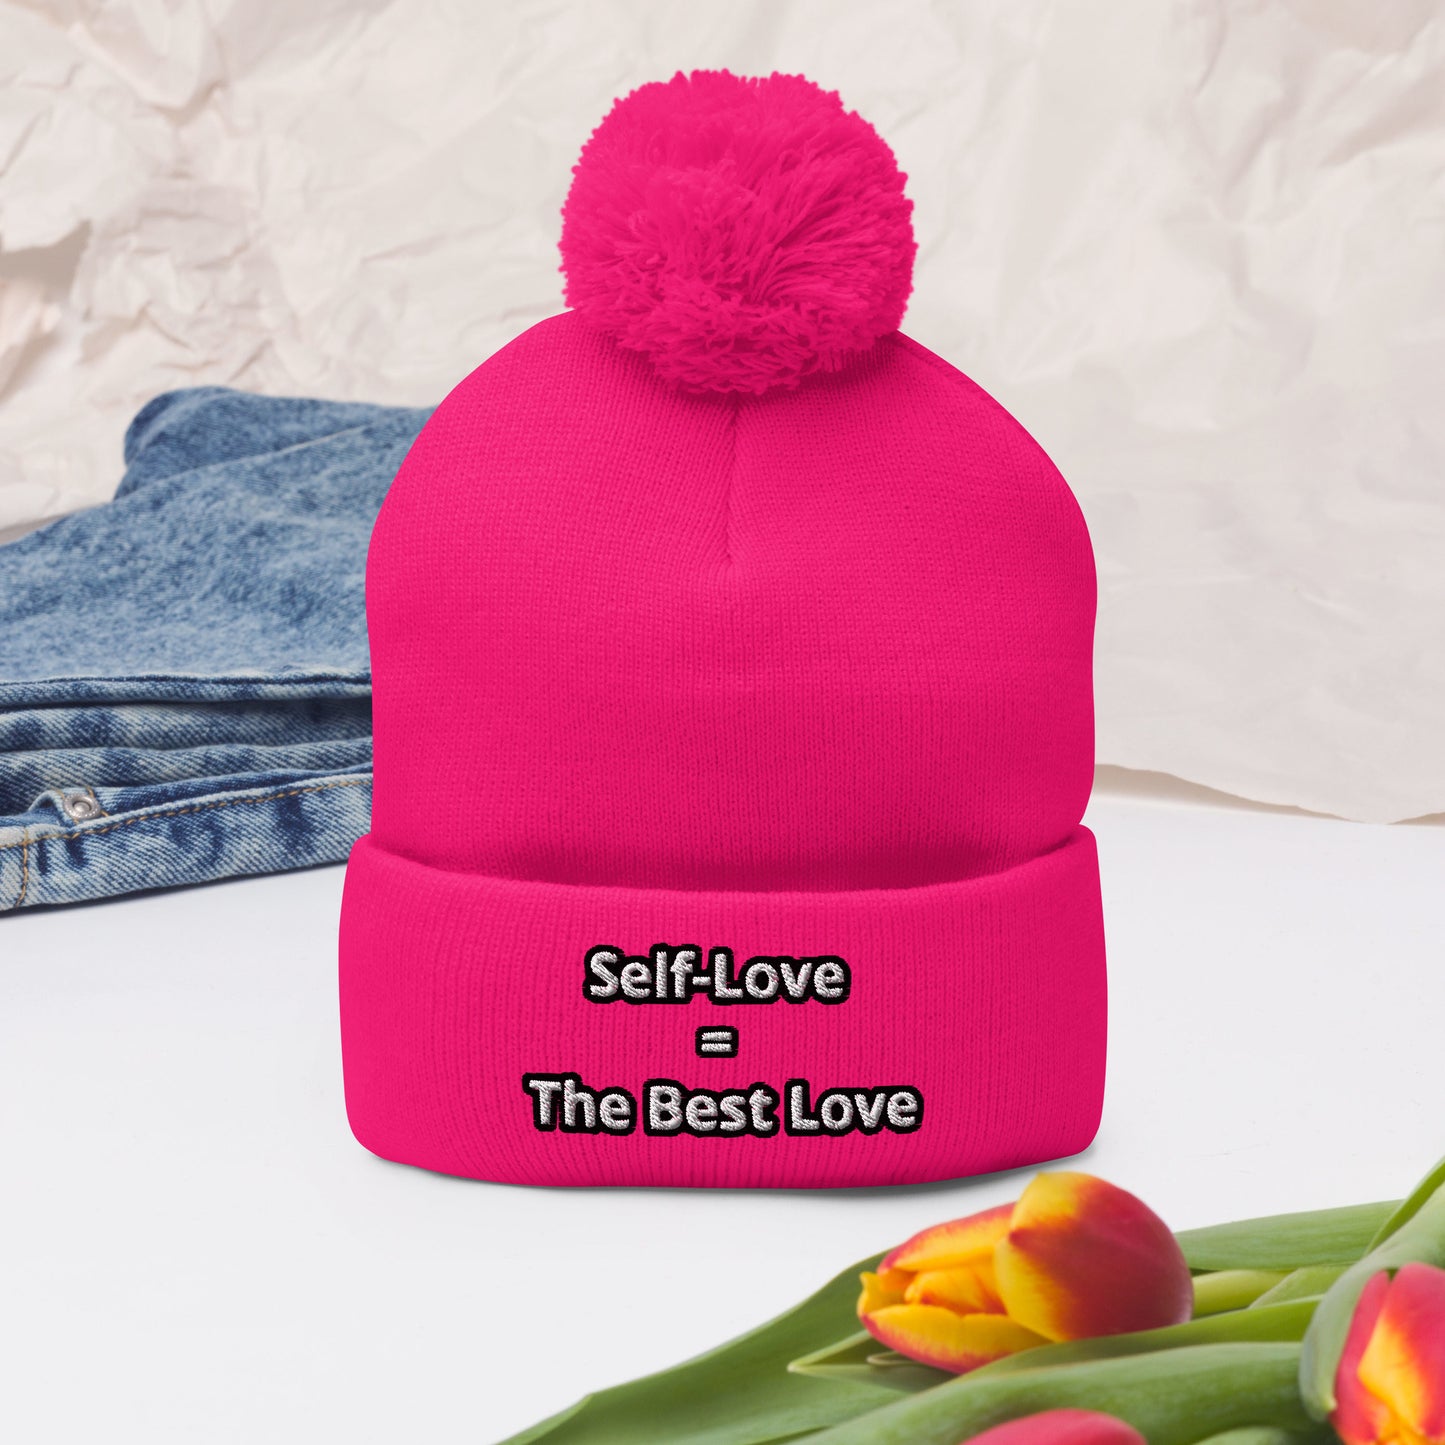 Self-Love = The Best Love Pom-Pom Beanie